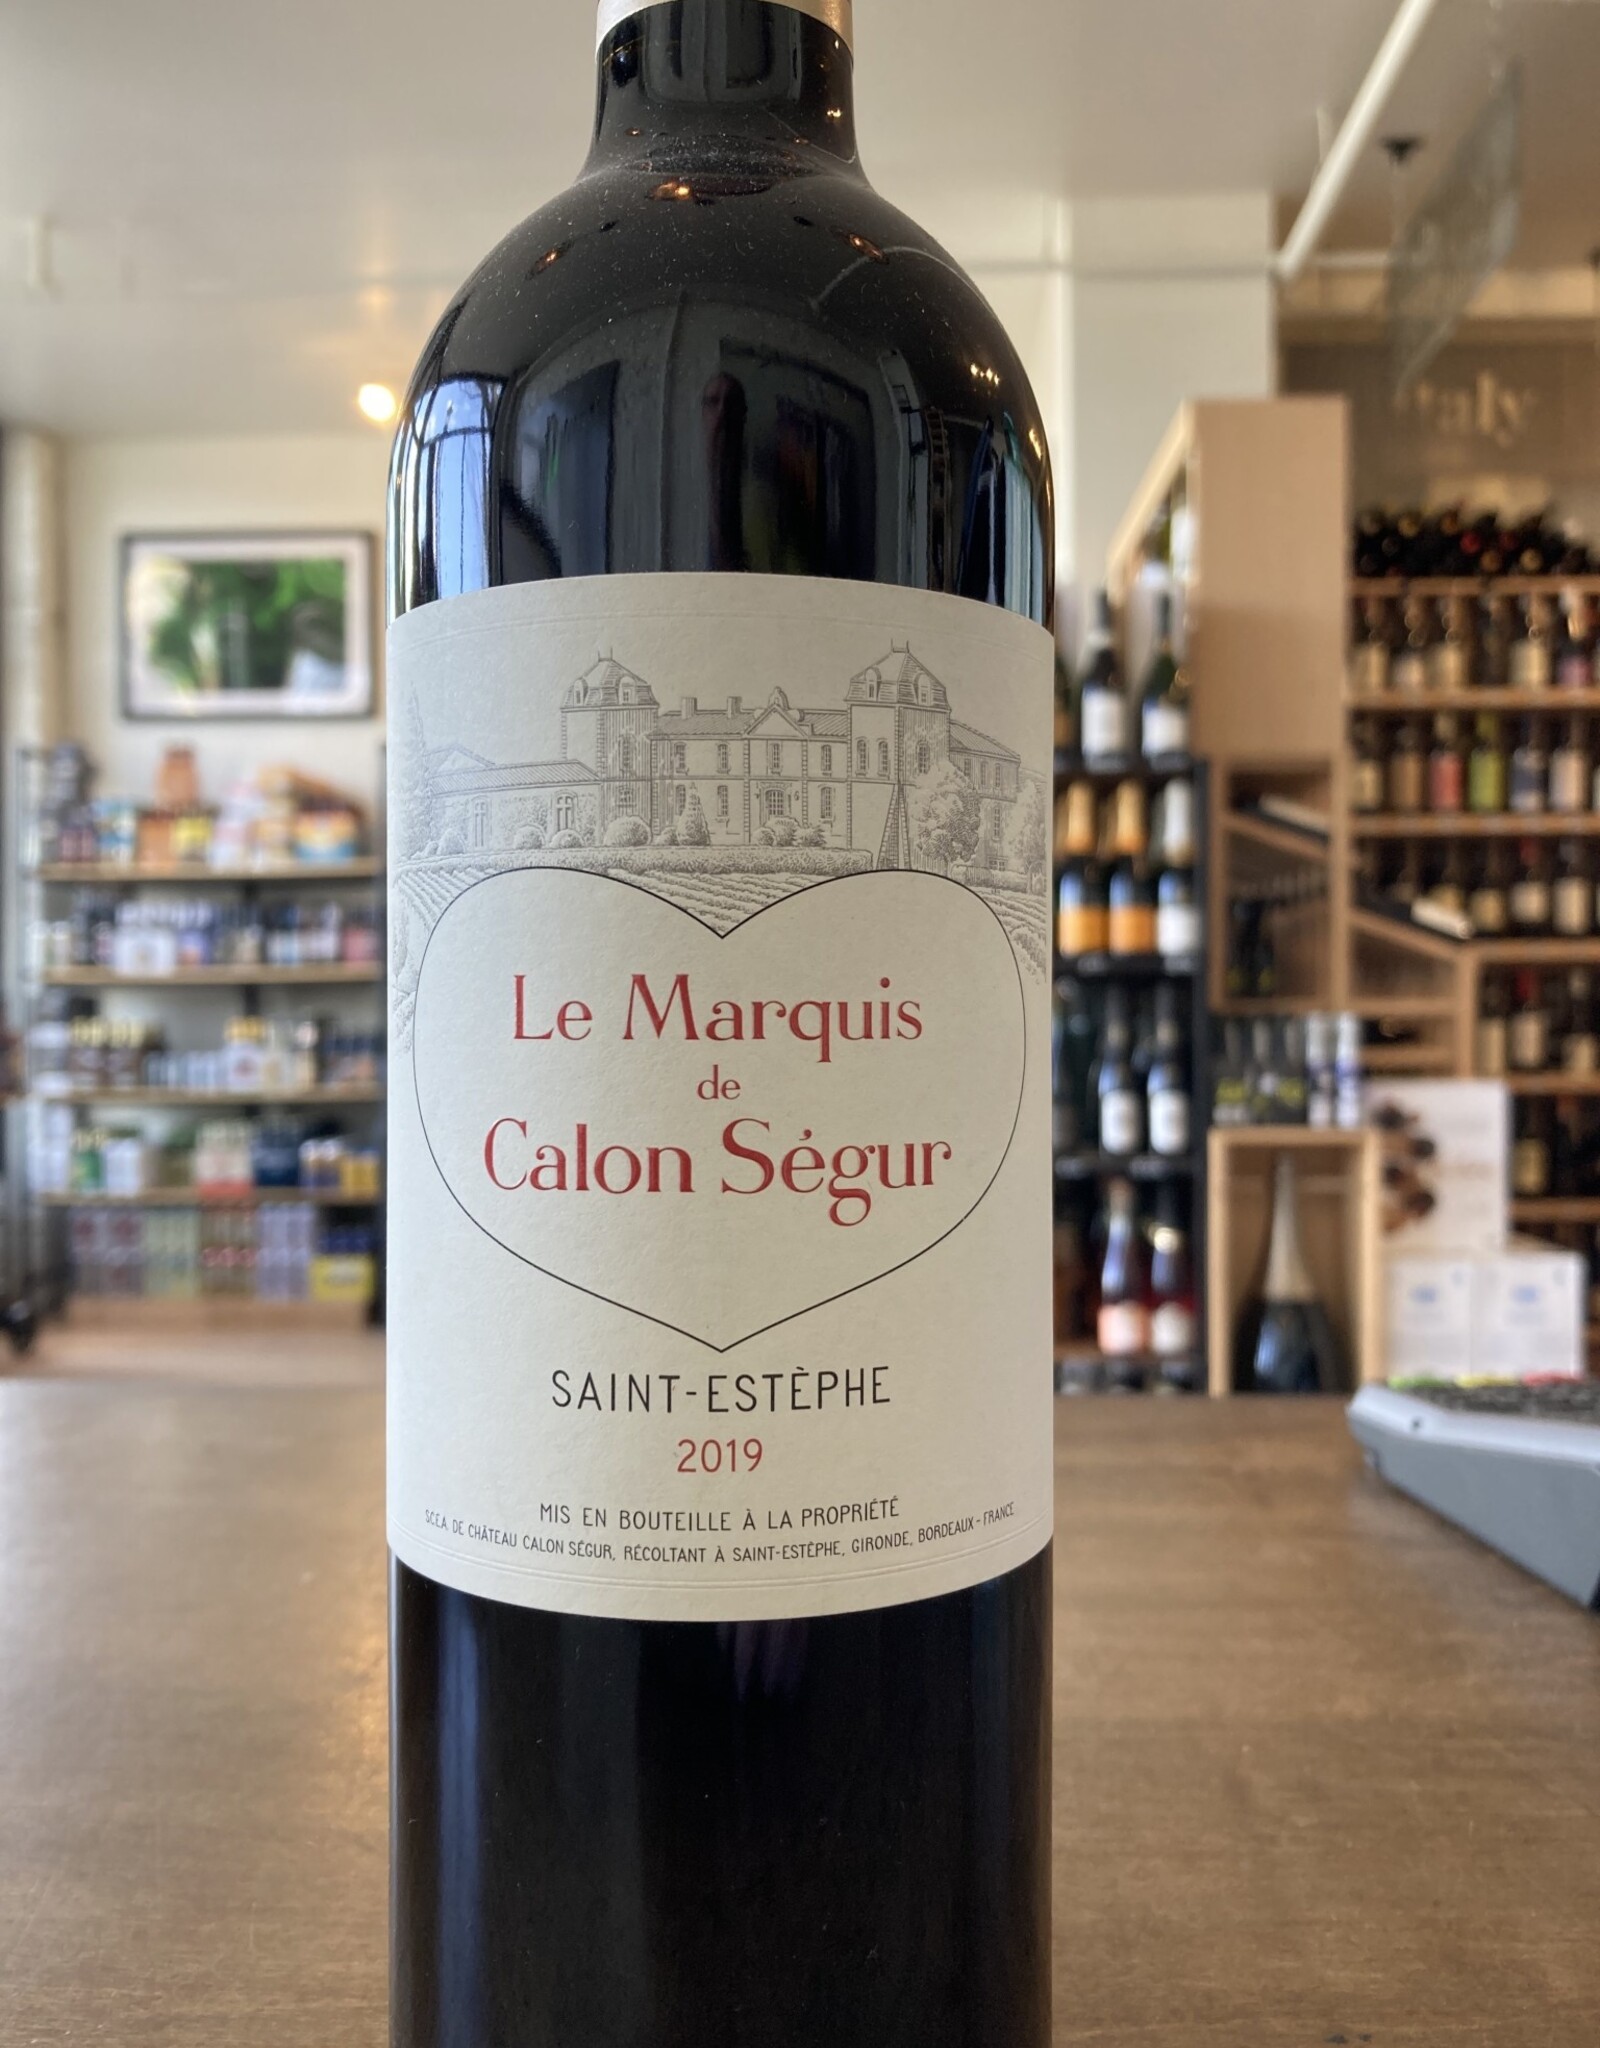 Le Marquis de Calon Segur, Saint-Estephe 2019